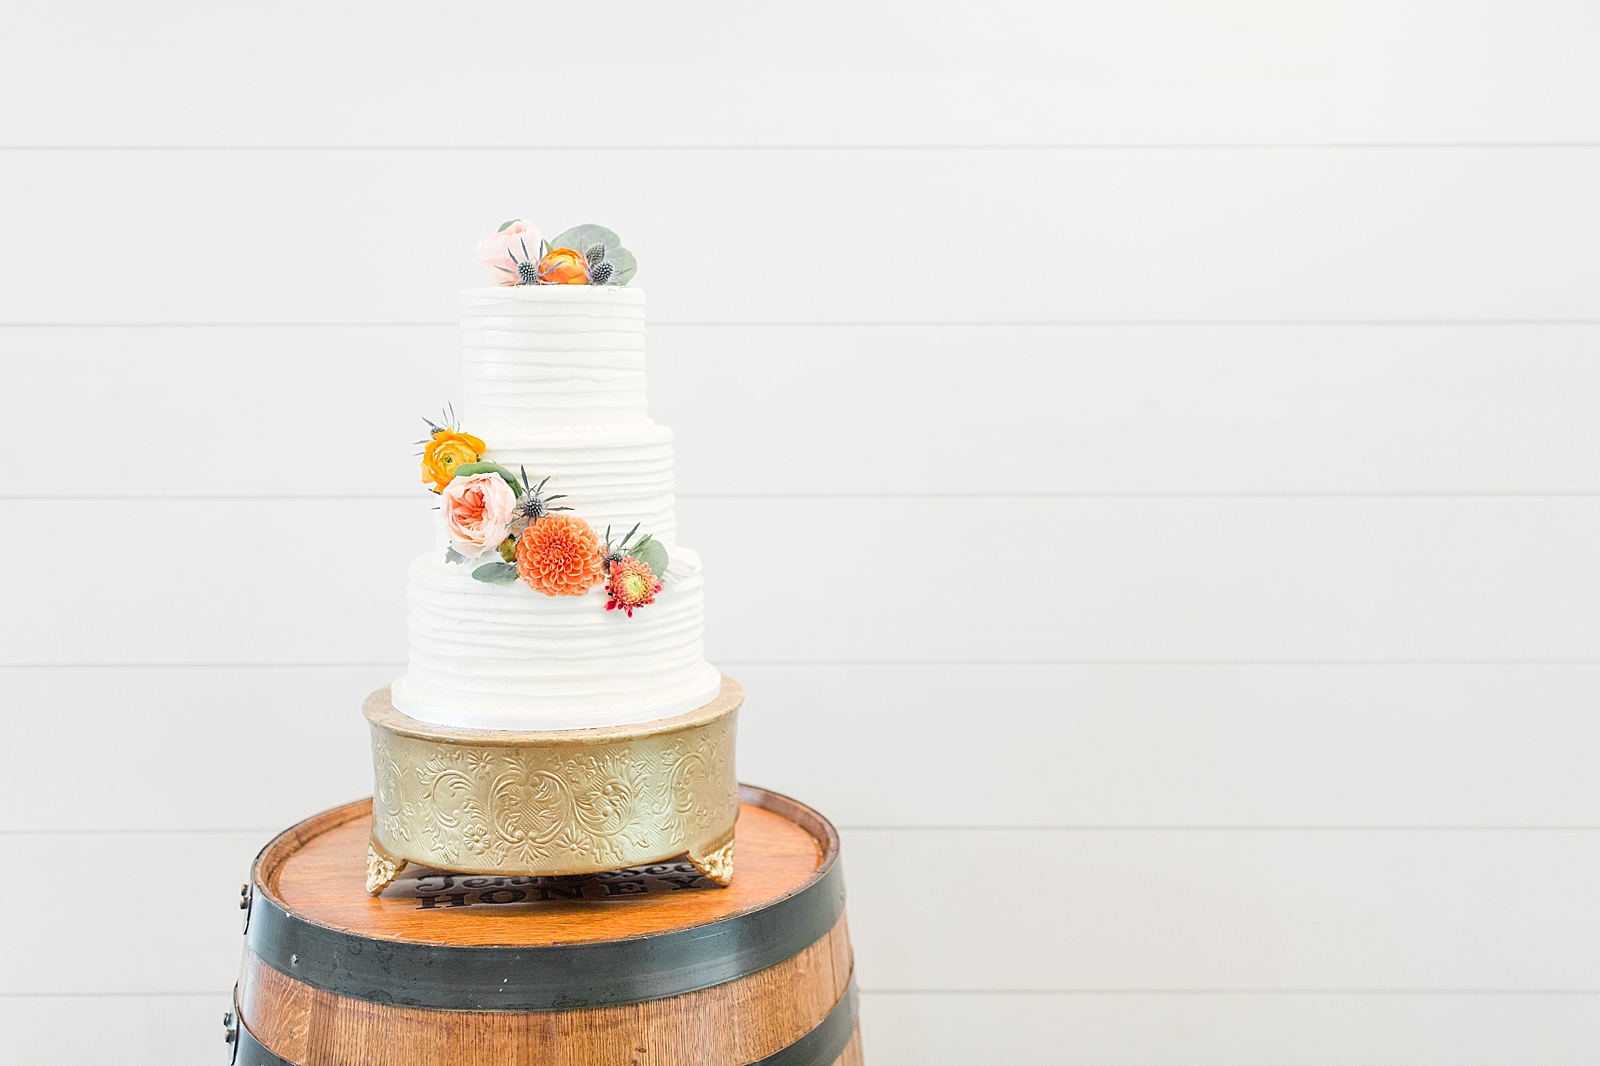 Chestnut Ridge Wedding textured white wedding cake on wood barrel Photo